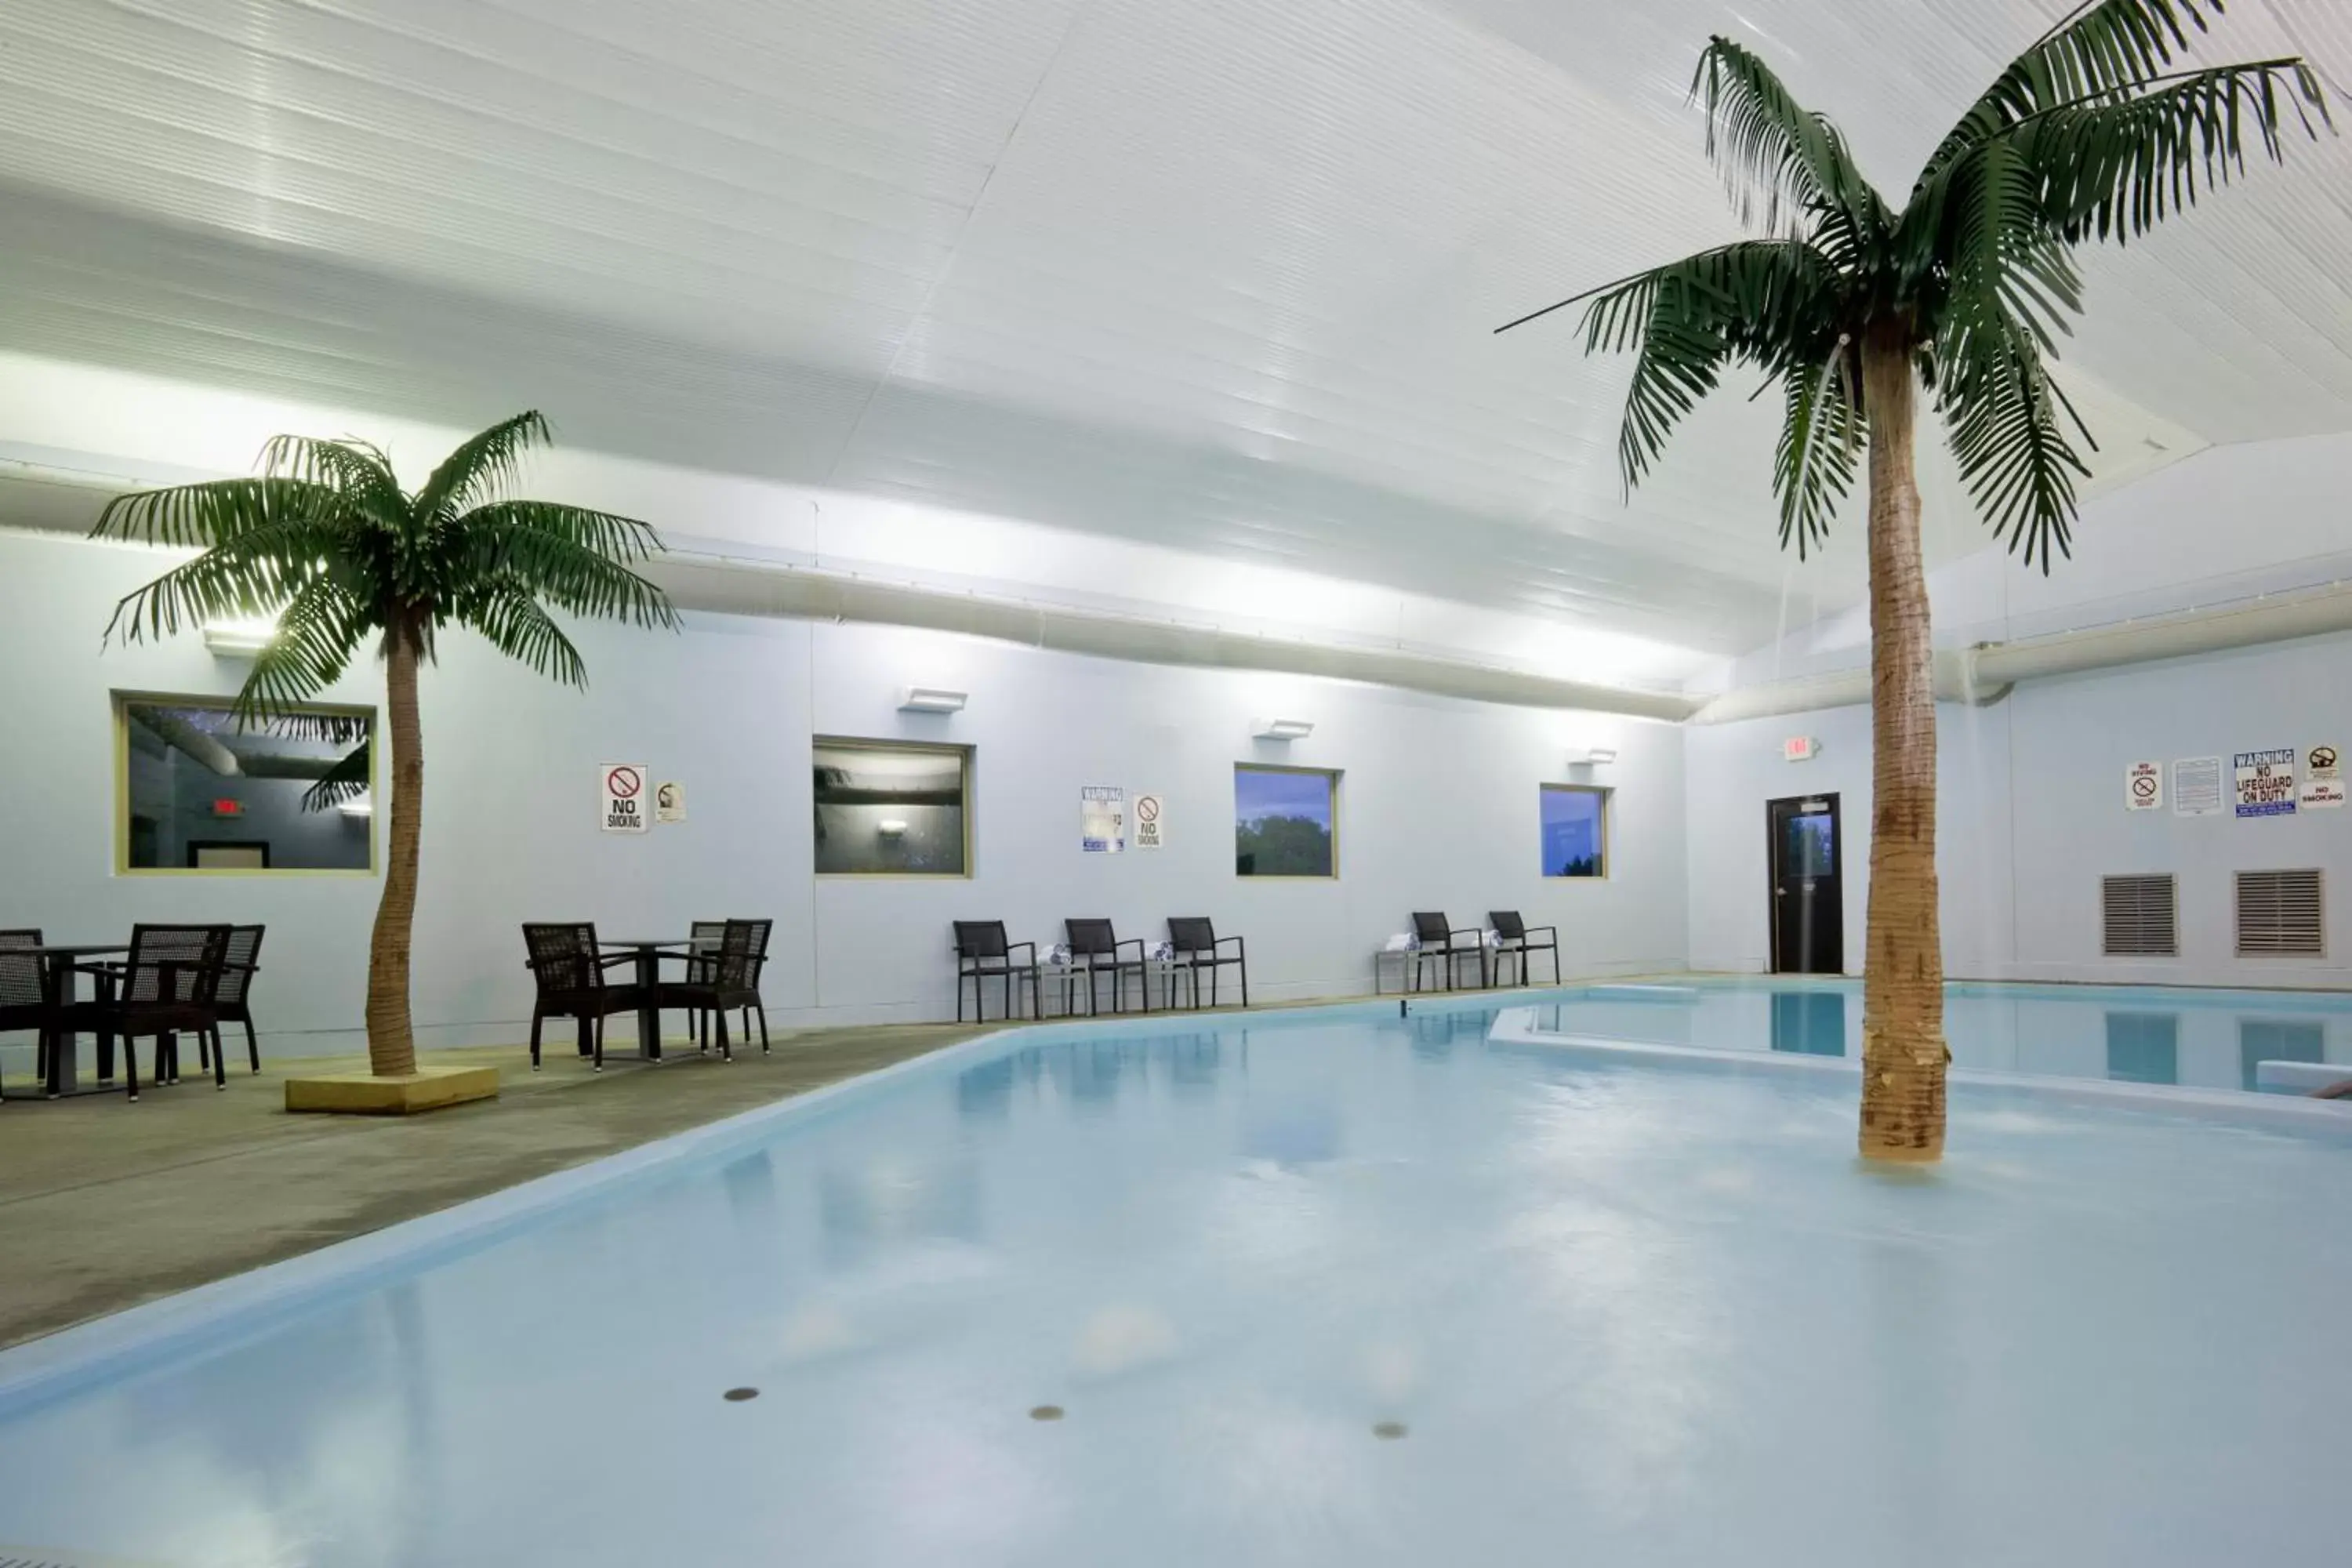 Swimming Pool in Carrollton Hotel